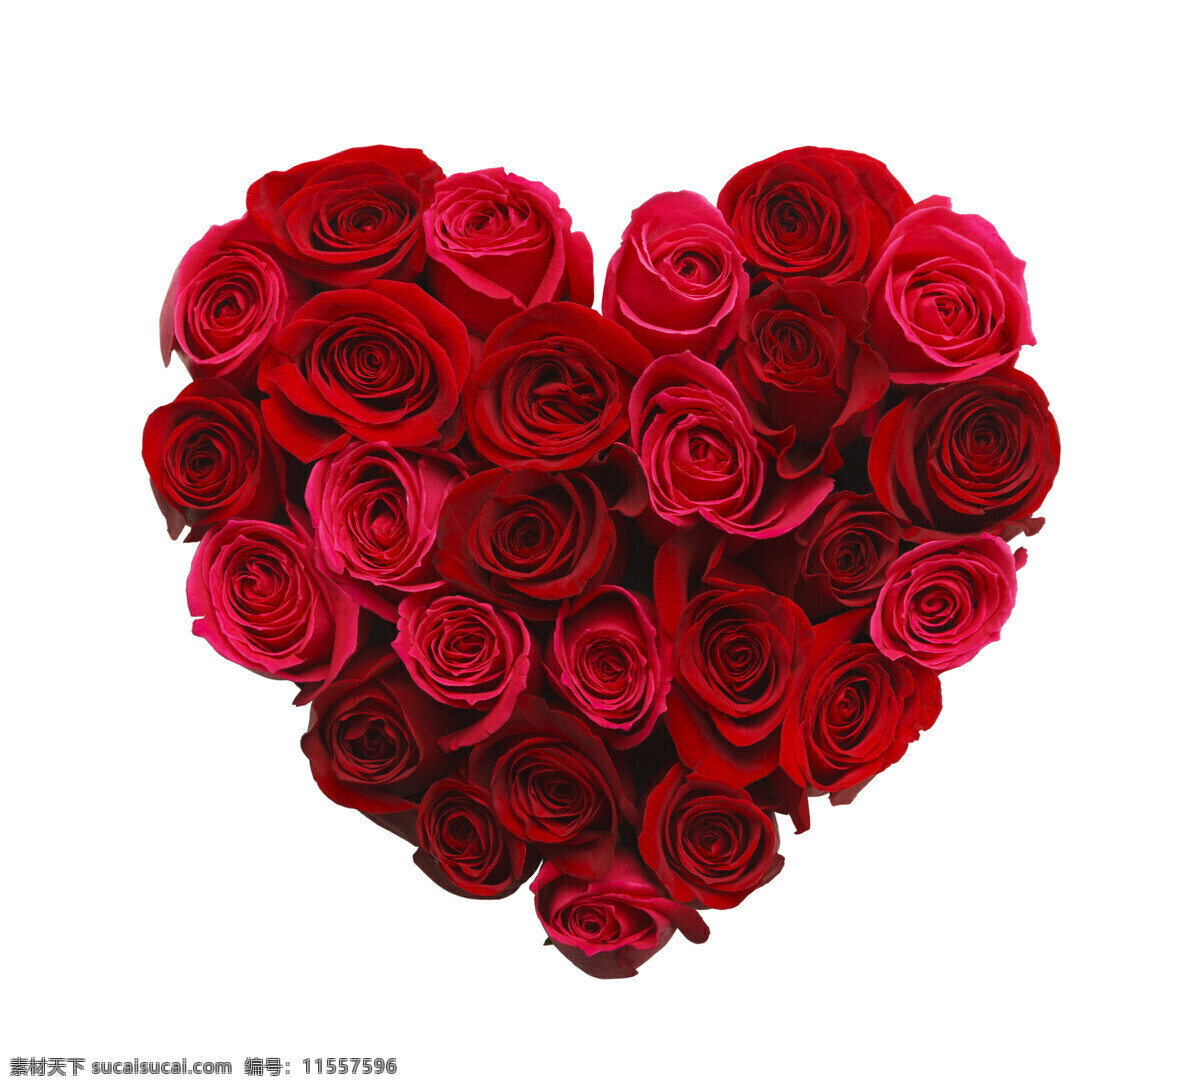 心形 玫瑰花 心形玫瑰花 花朵 红玫瑰 美丽花朵 花卉 情人节元素 情人节素材 节日庆典 生活百科